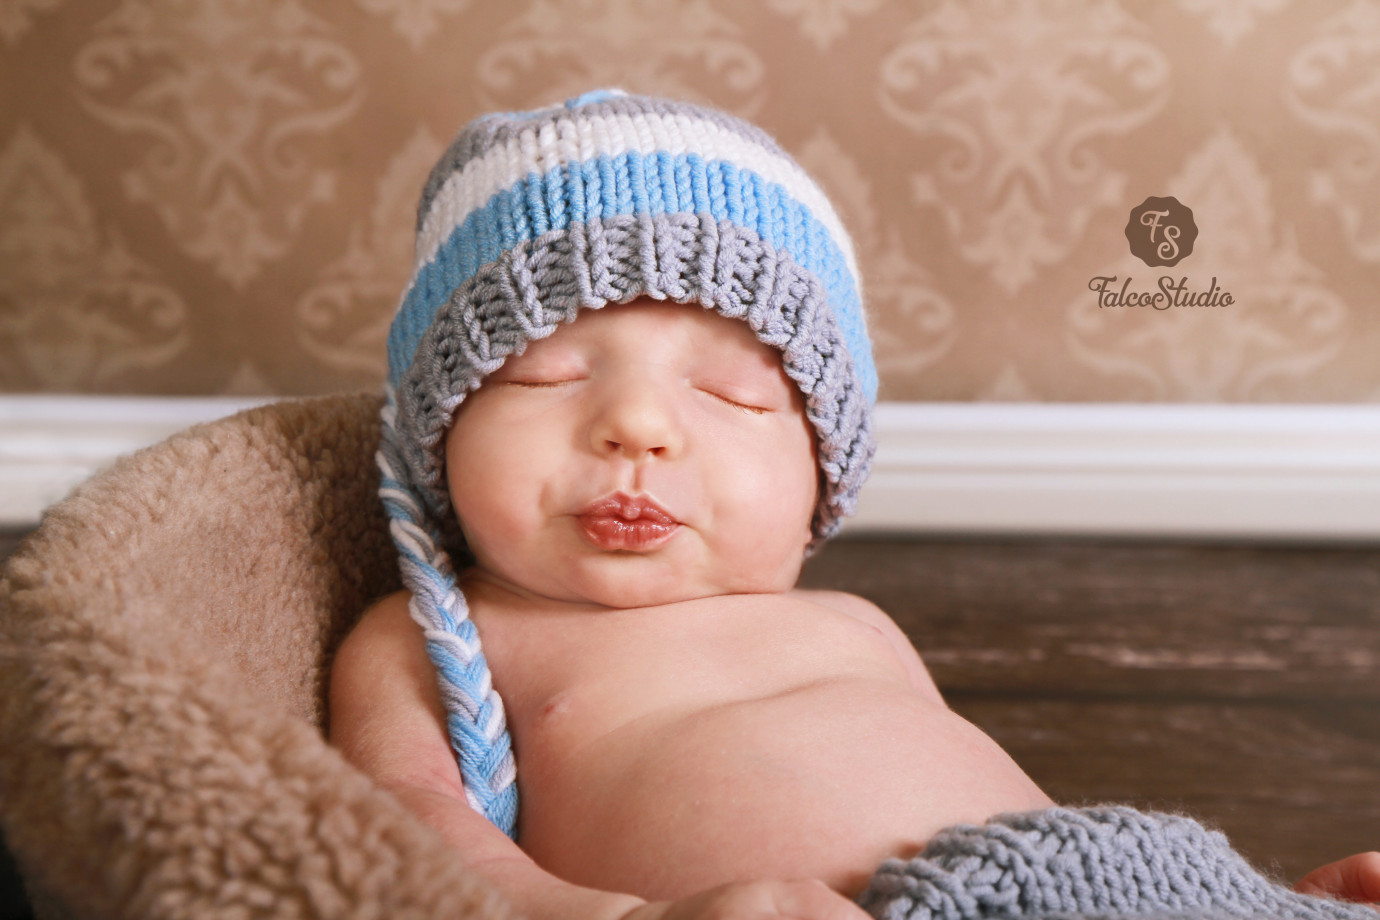 fotograf laziska-gorne falco-studio-dorota-jastrzebska portfolio zdjecia noworodkow sesje noworodkowe niemowlę